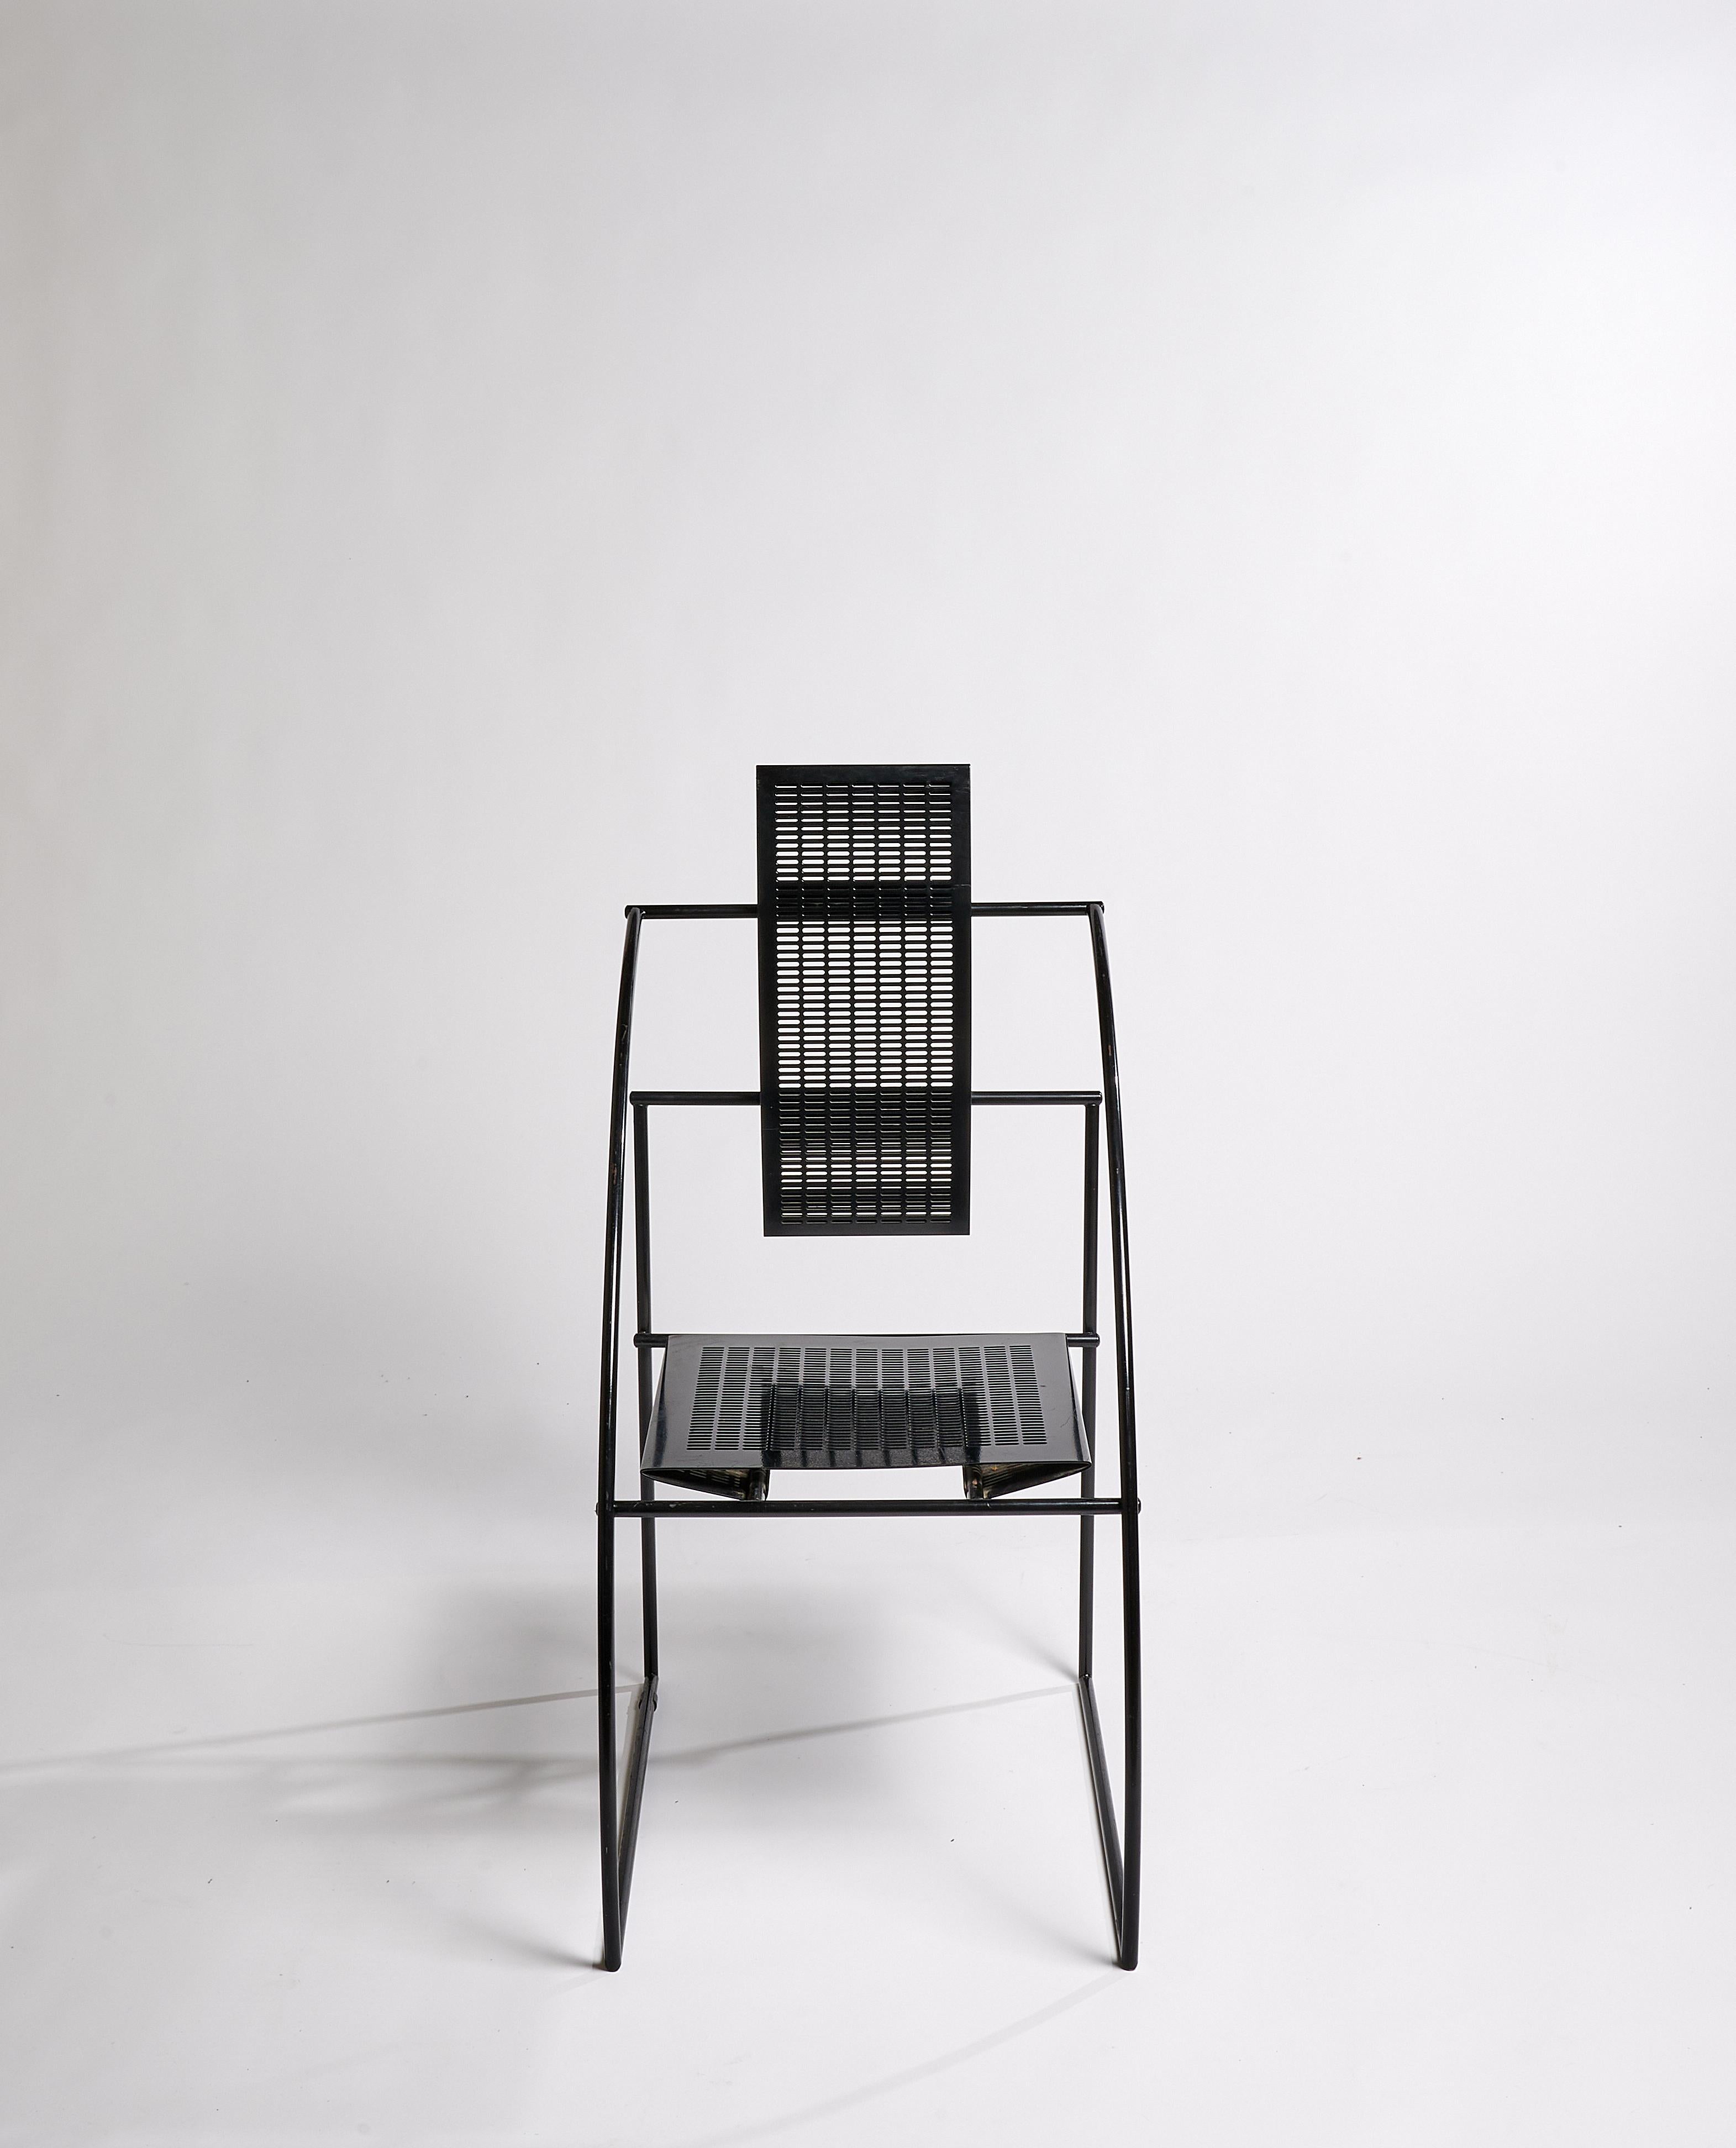 Chaise Quinta (modèle 605) de Mario Botta, pour Alias

Structure en acier laqué noir, assise et dossier en tôle d'acier perforée noire.